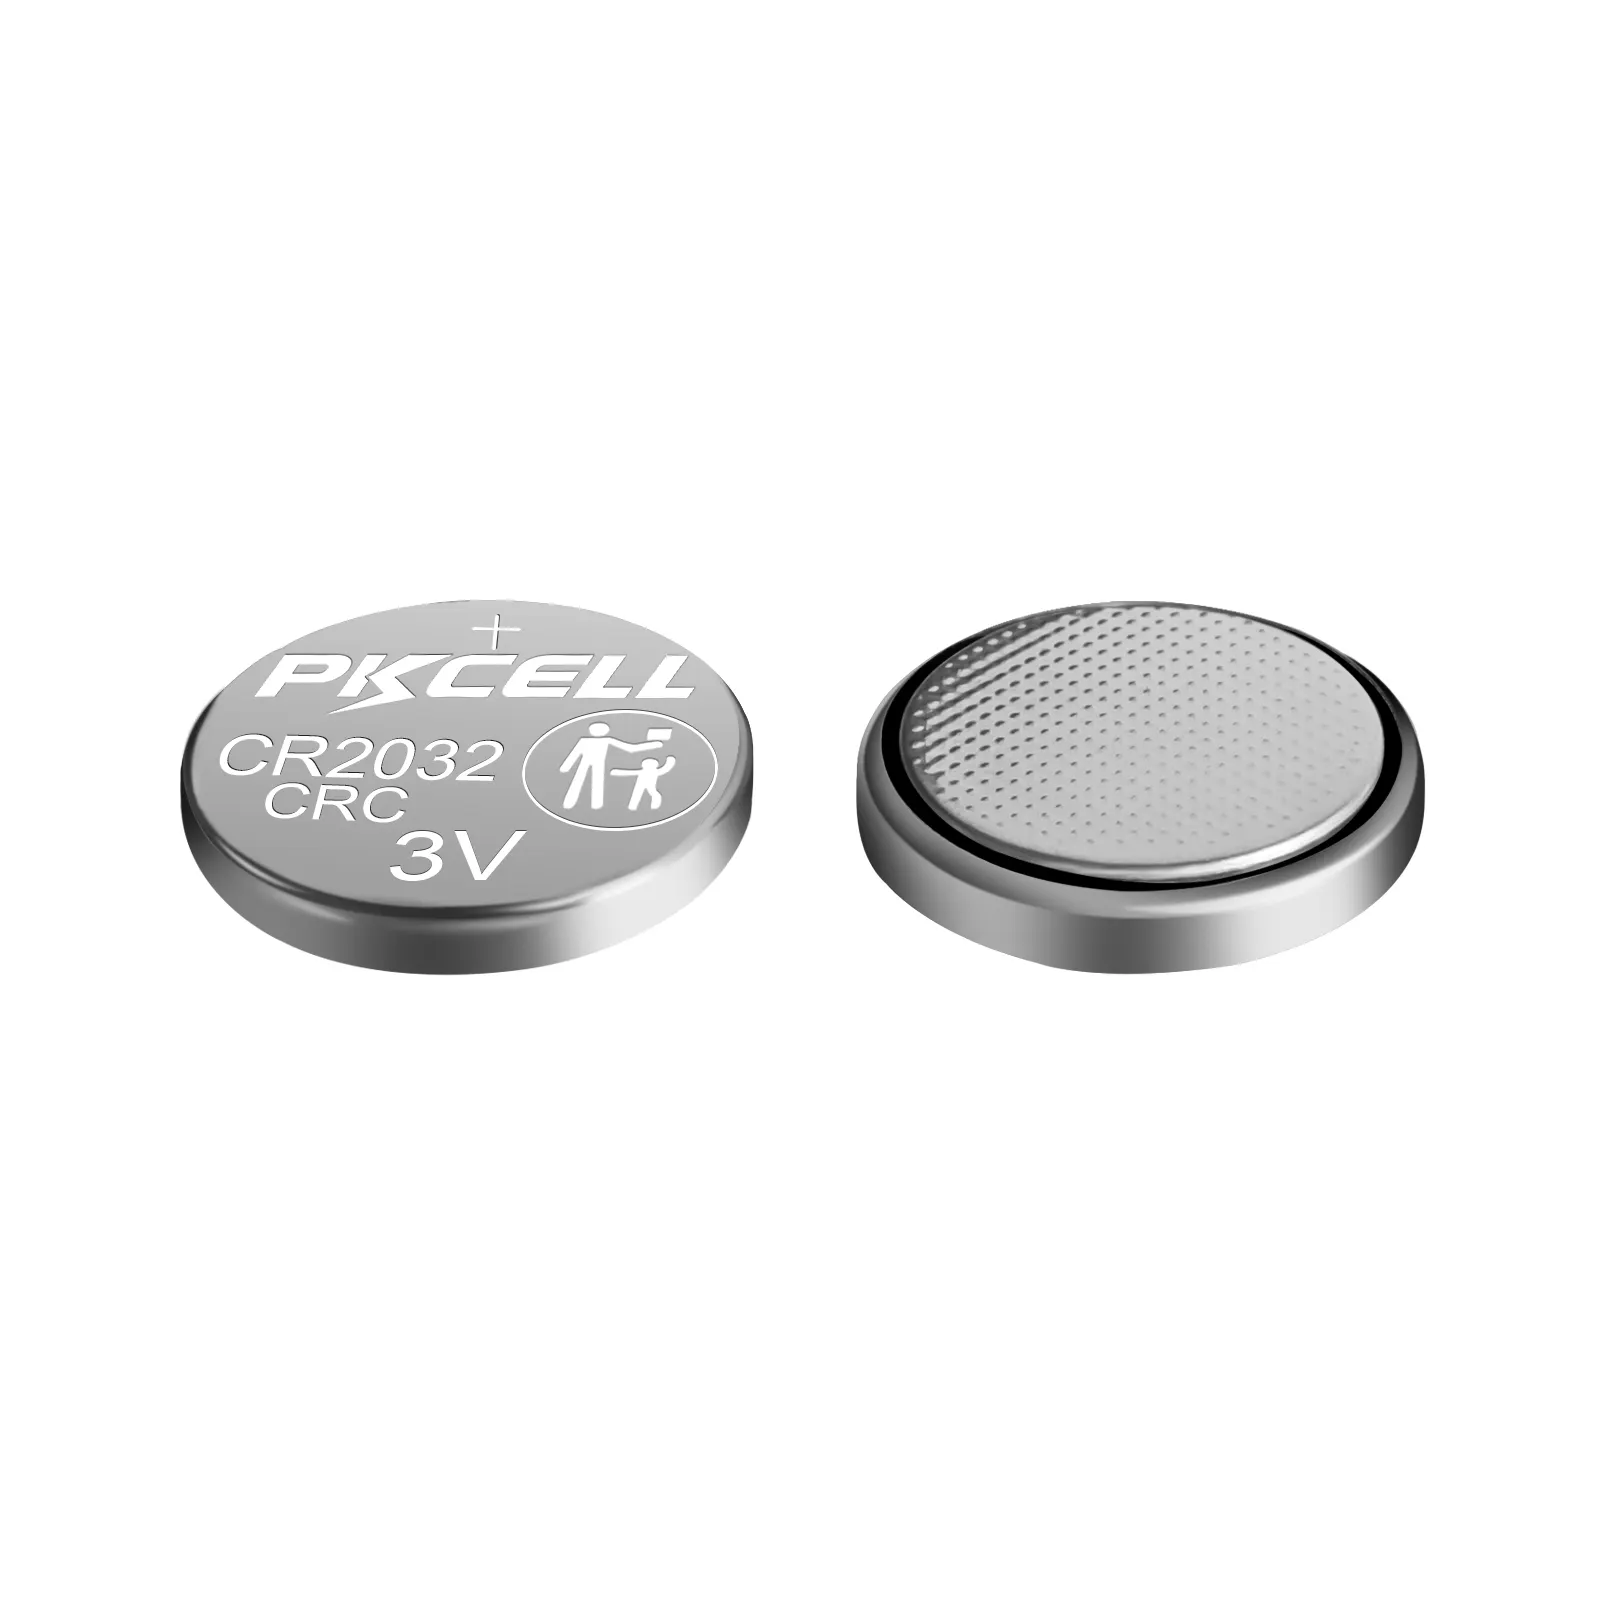 Pilas de botón CR2016 2025 2032, baterías no recargables de litio y manganeso